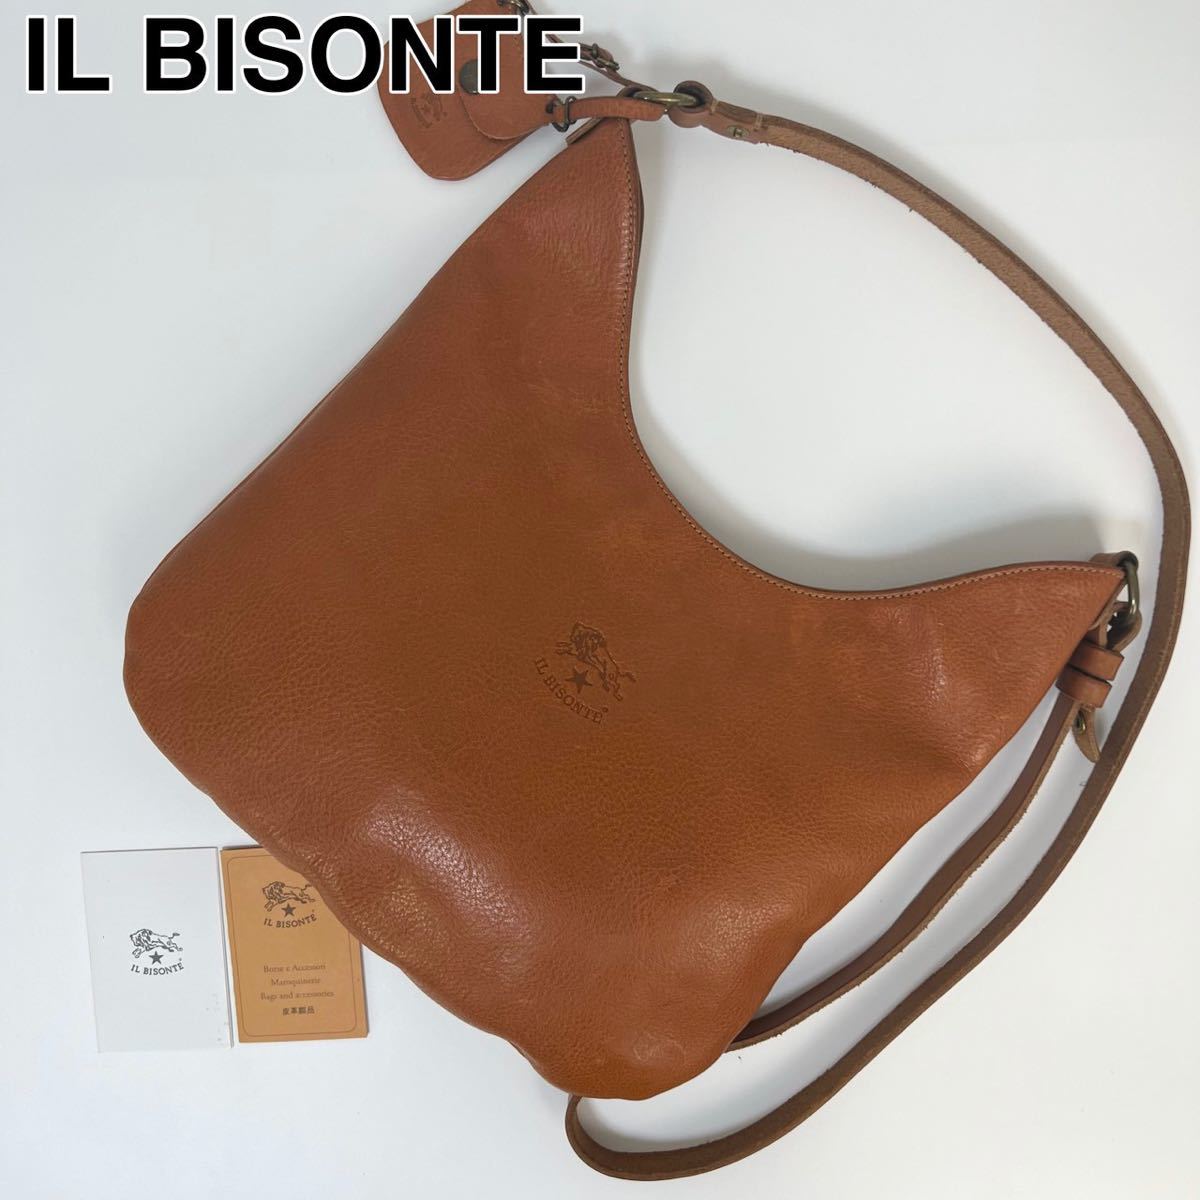 【超歓迎された】 23G29 IL BISONTE イルビゾンテ ショルダーバッグ 本革 かばん、バッグ